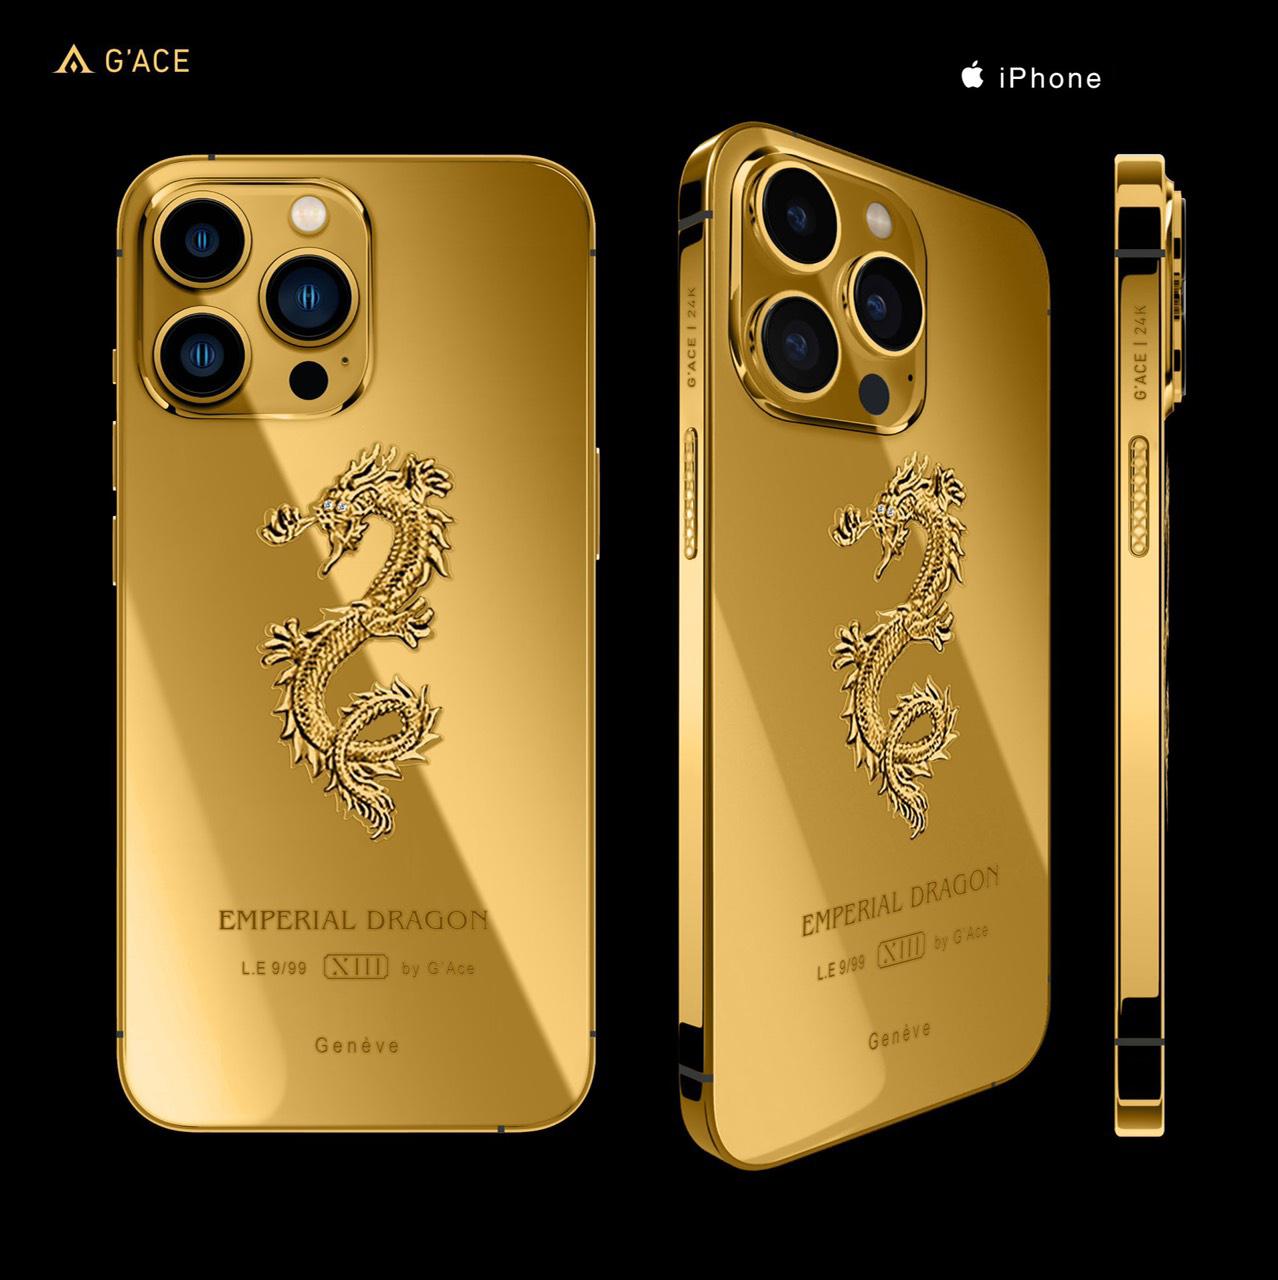 Với lớp mạ vàng sáng bóng, iPhone 13 mạ vàng đã trở thành một sản phẩm độc đáo và quyến rũ, thu hút sự chú ý của nhiều người. Thiết kế hoàn hảo, đẳng cấp và hiệu năng mạnh mẽ của chiếc điện thoại này sẽ mang lại cho bạn trải nghiệm tuyệt vời khi sử dụng.